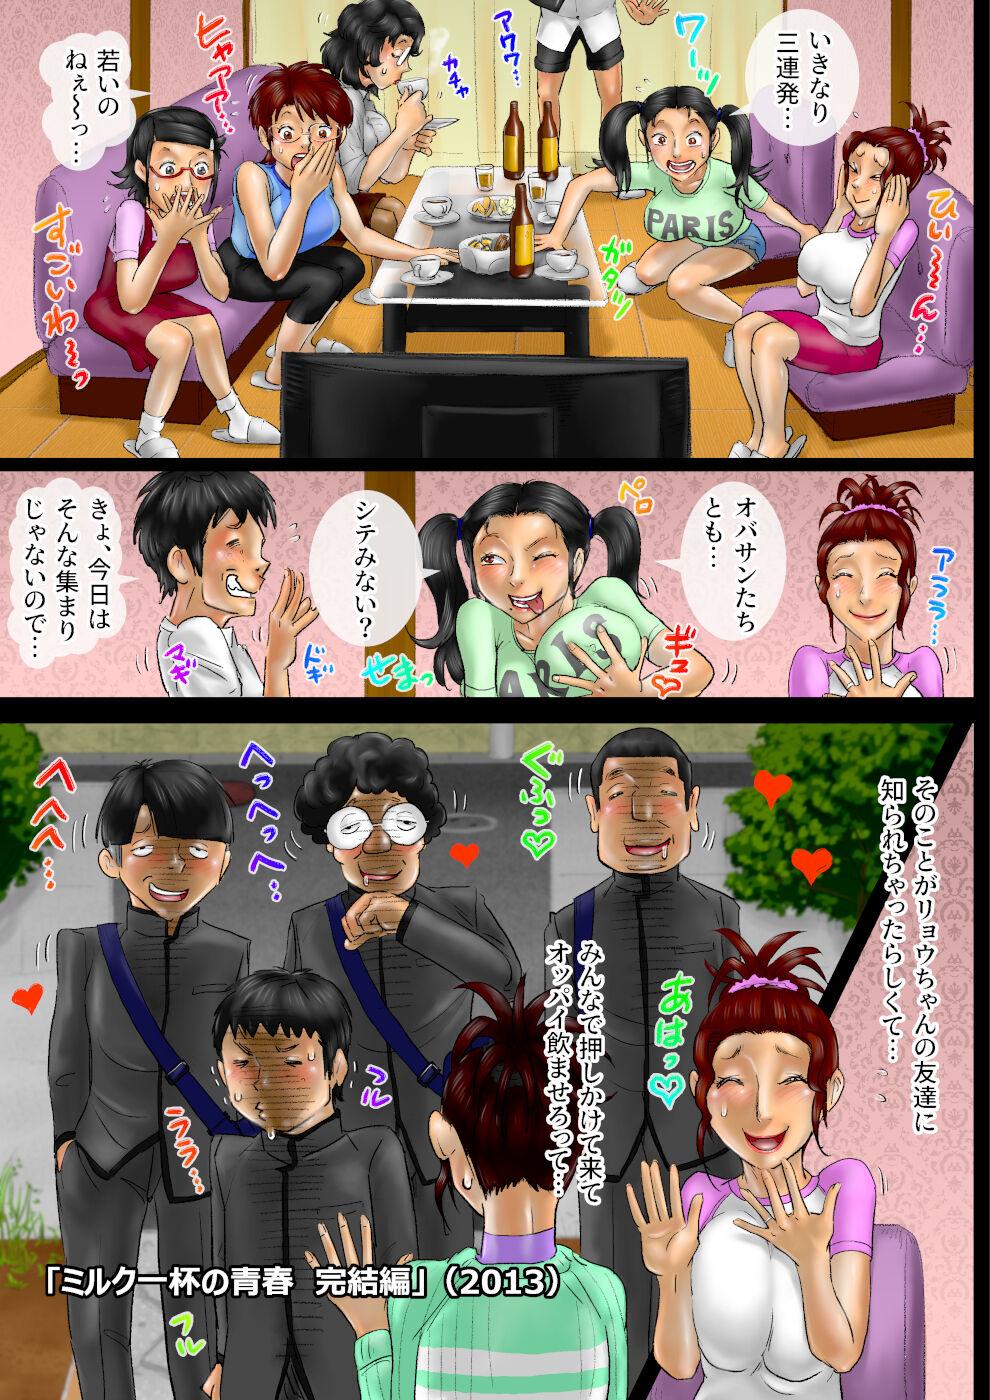 Mamando Sākuru hossoku 10 shūnenkinen obasan kyara zadan-kai All Natural - Page 8